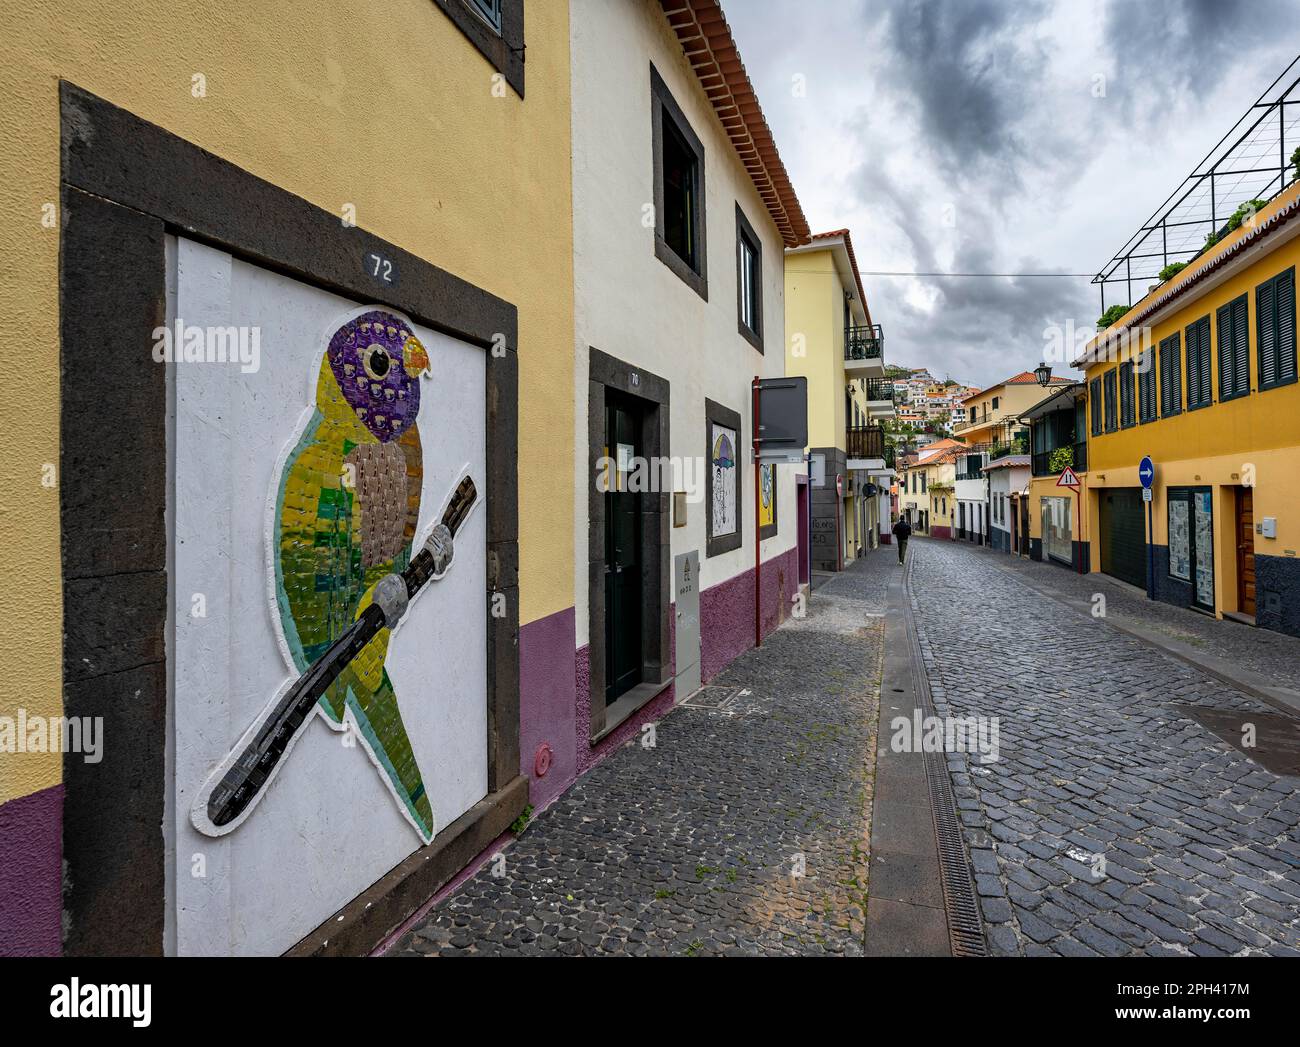 Rue avec mur de maison peint, vieille ville, ville de Camara de Lobos, Madère, Portugal Banque D'Images